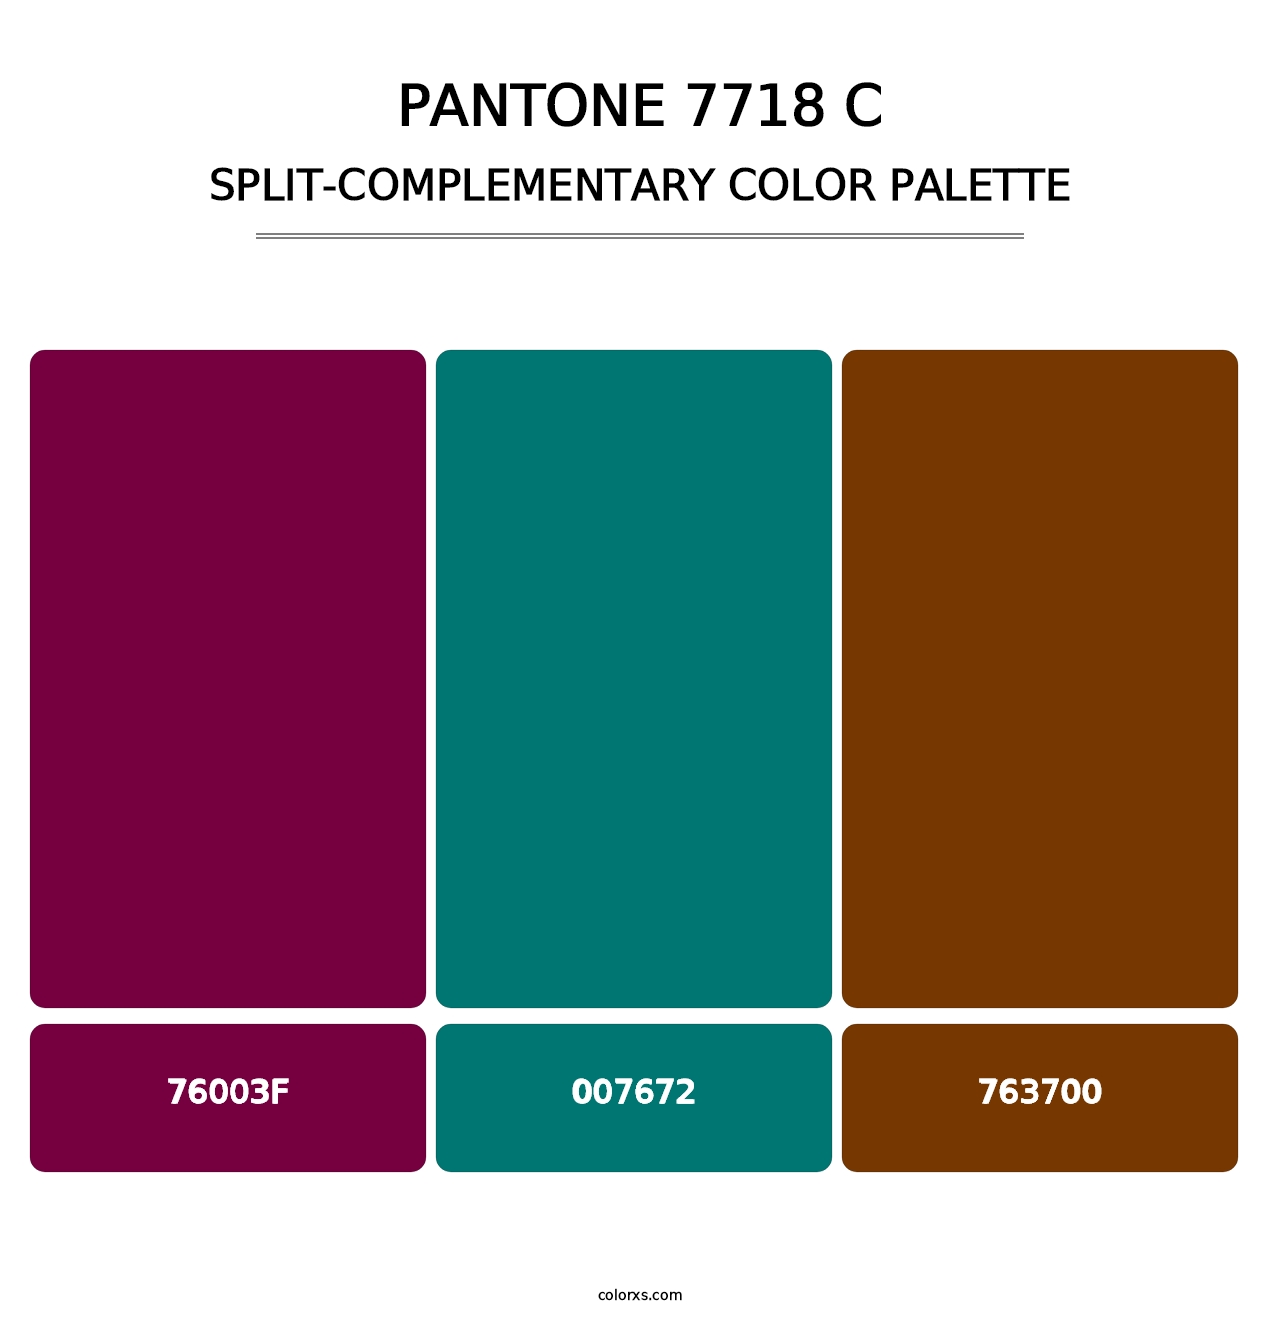 PANTONE 7718 C - Split-Complementary Color Palette